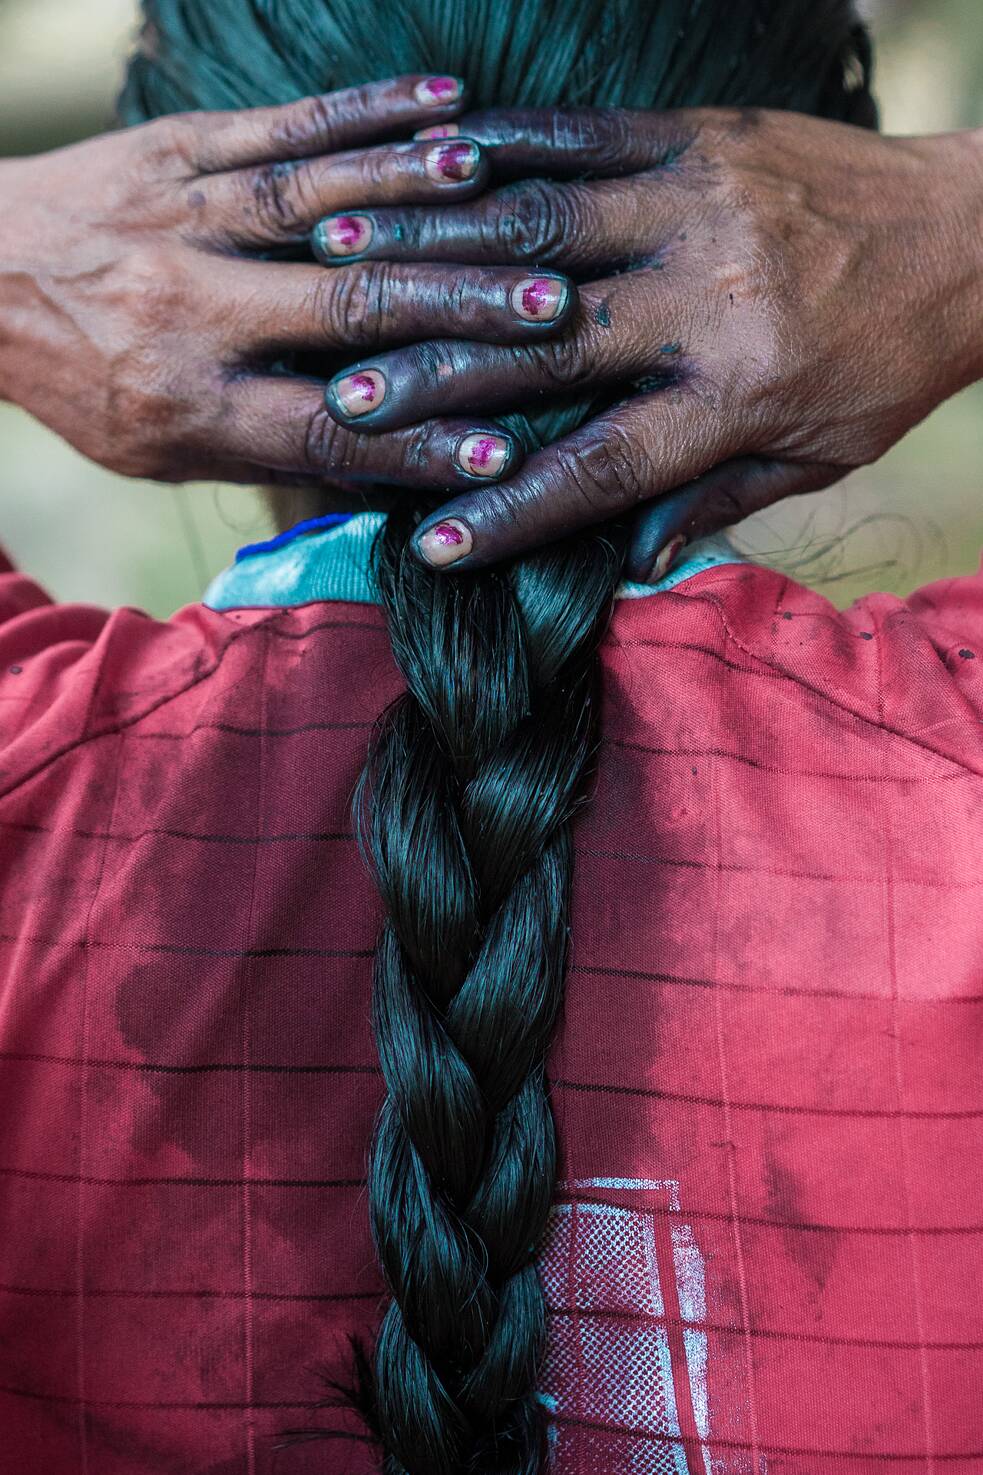 2016. Magdalena Santi passa wituk no cabelo. Wituk é um pigmento escuro produzido a partir de uma fruta amazônica conhecida como wituk, e pode permanecer no cabelo de um indivíduo por até duas semanas. Esse pigmento é um elemento muito importante das tradições de Sarayaku.